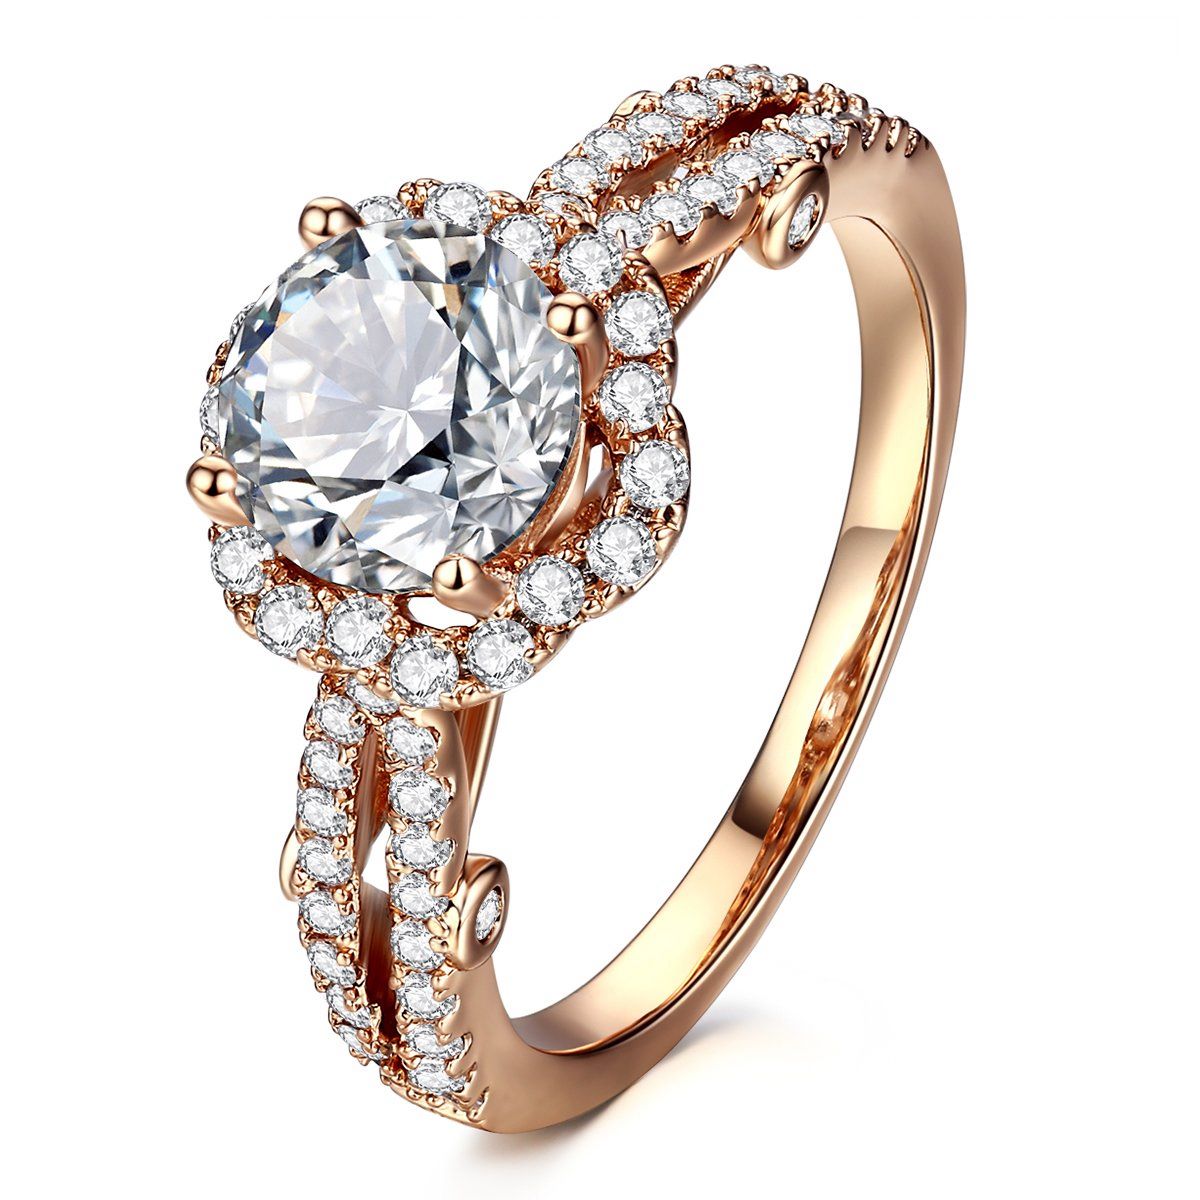 Best Diamond Alternative Engagement Rings for 2021